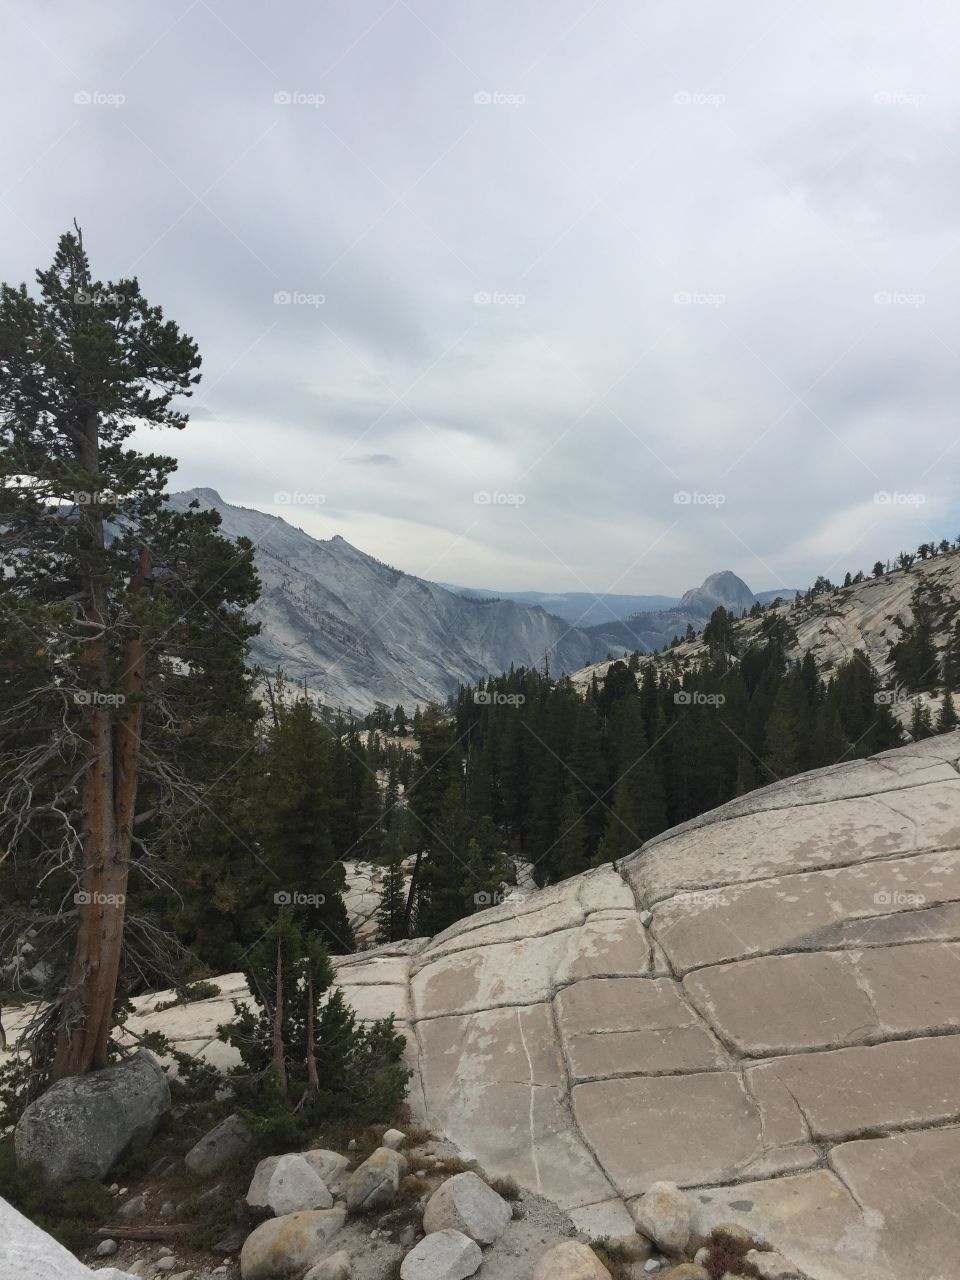 Yosemite California in September 